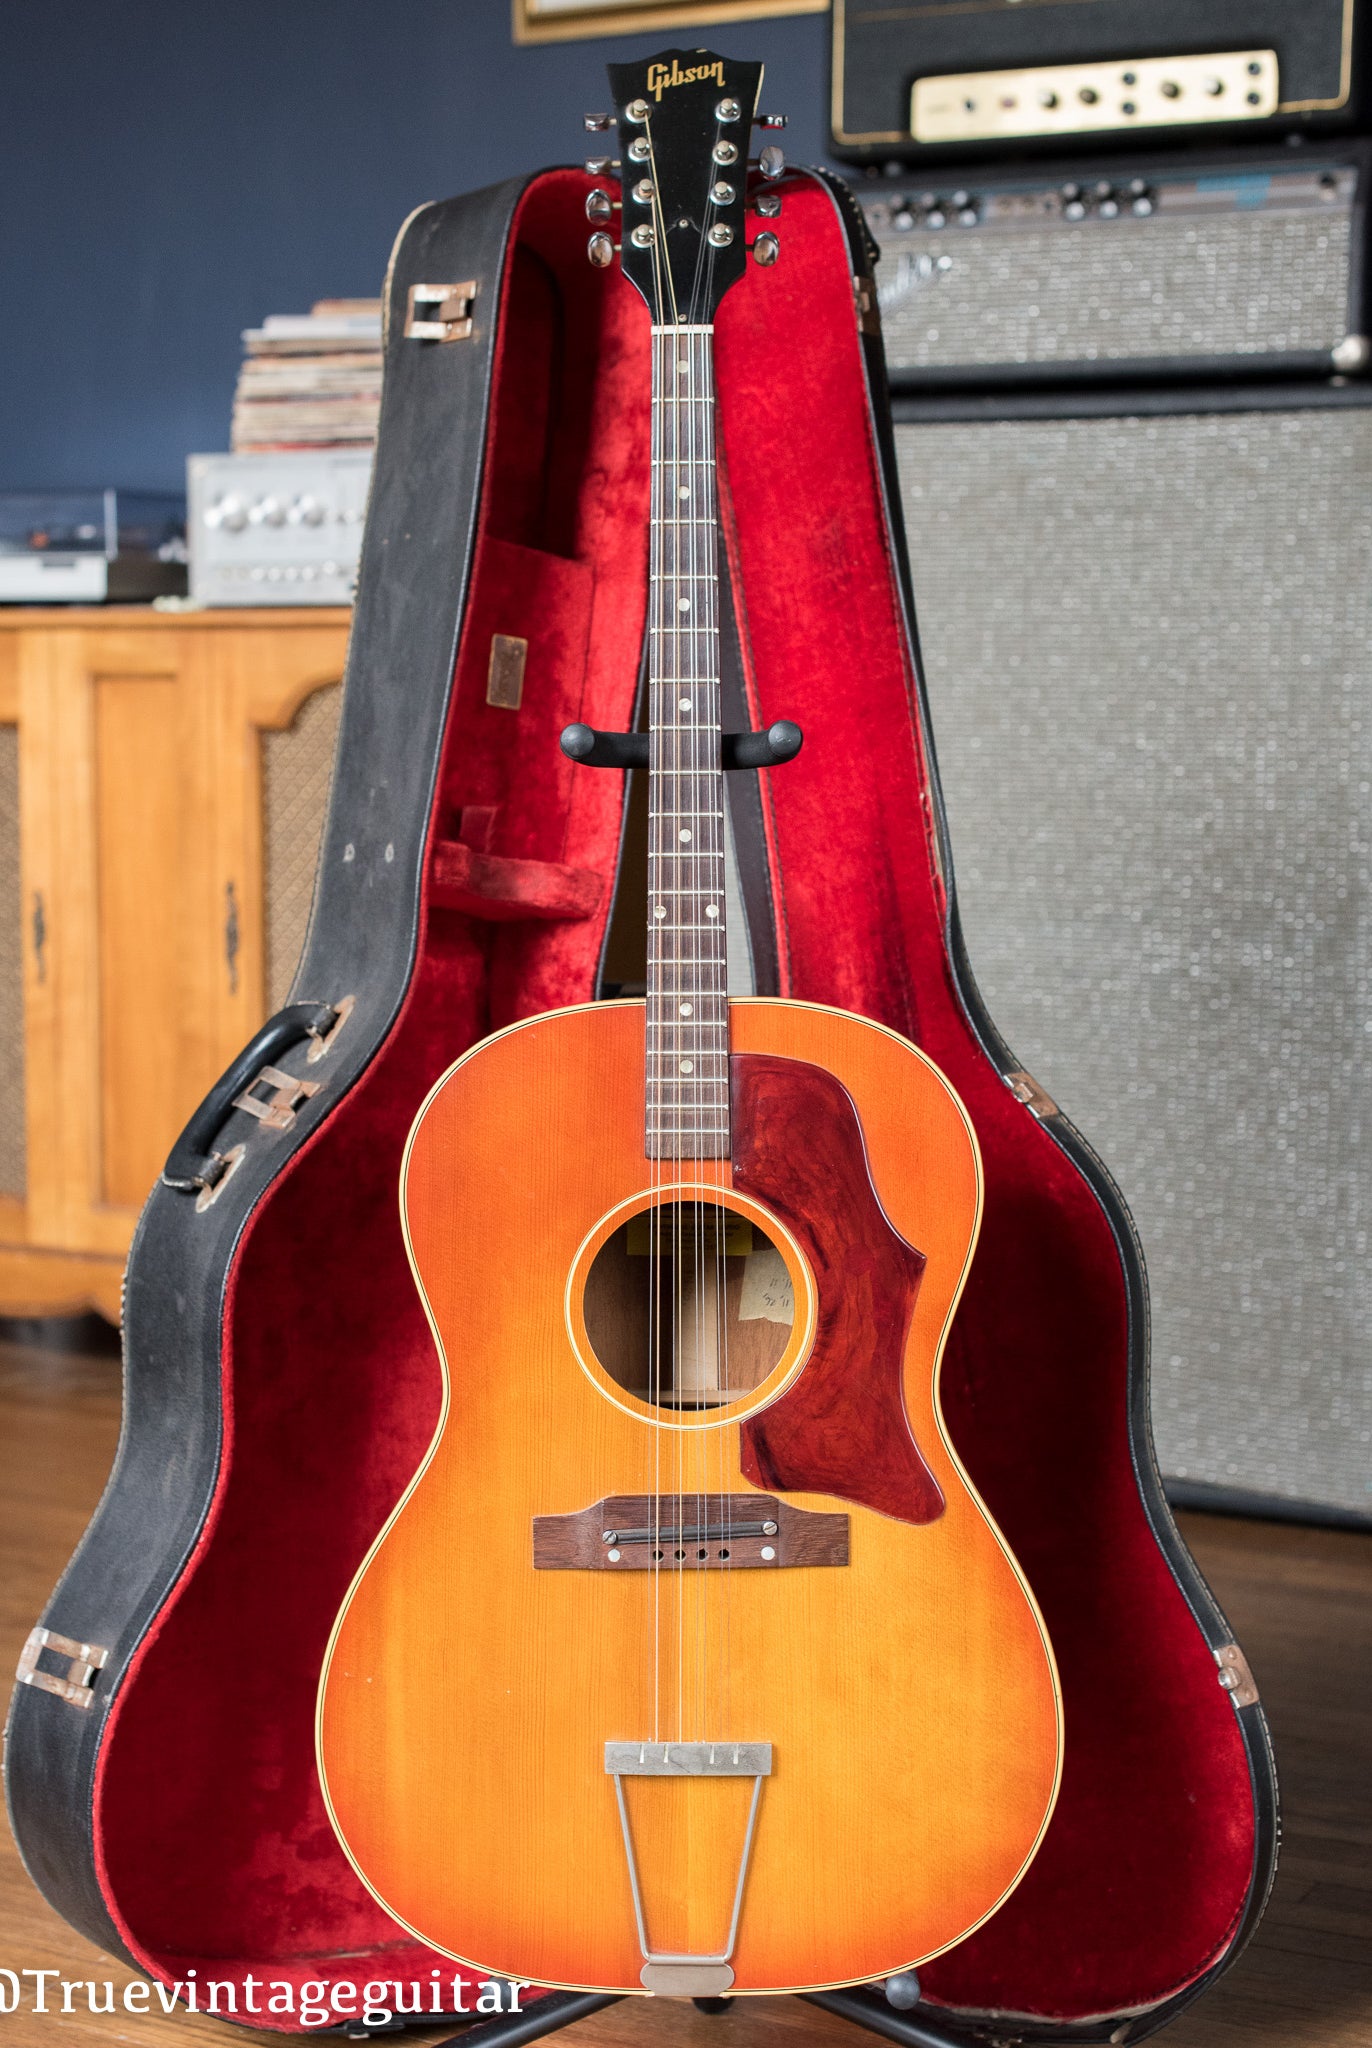 1964 Gibson TG-25 Octave Mandolin 8 string